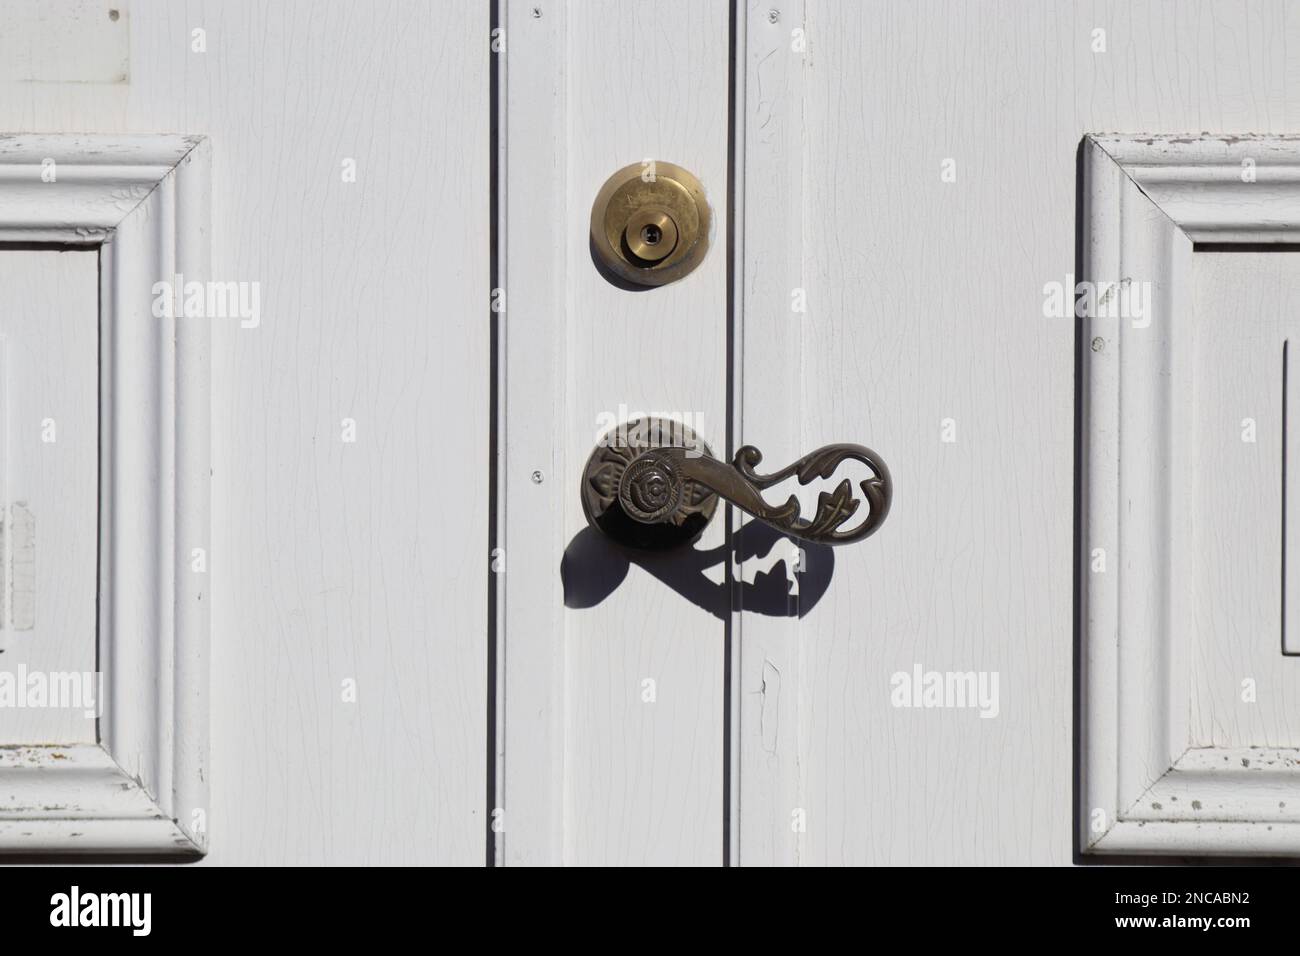 bronze floral metal door handle on white wooden door, old wooden door with metal handle. Old white garden doors. locked door, closed doors Stock Photo